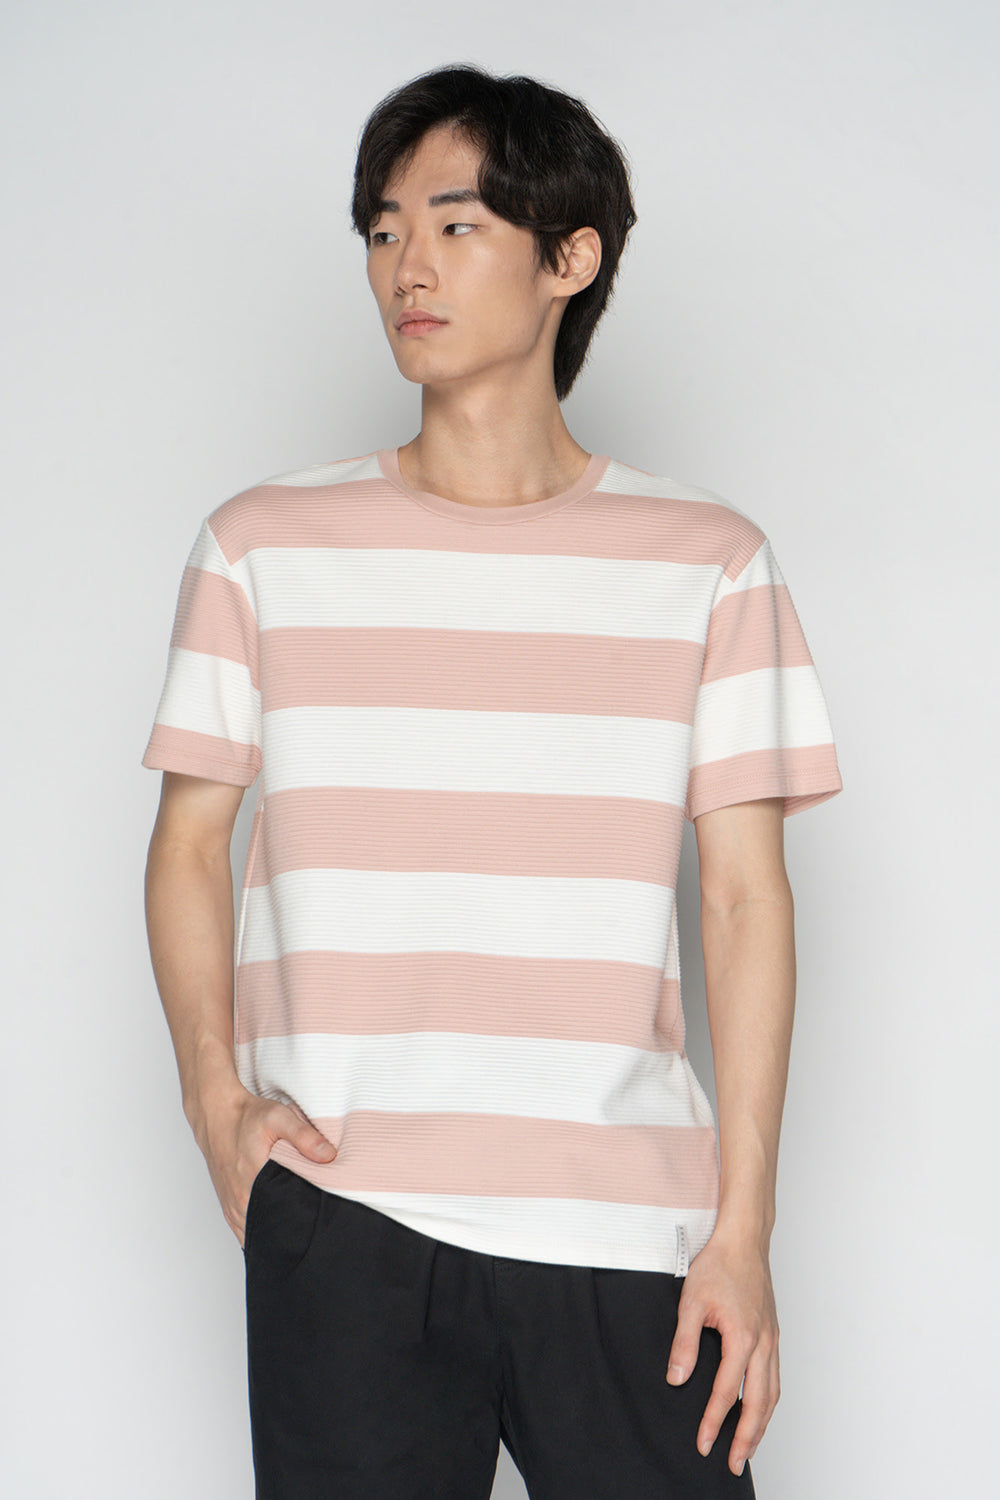 Dress Code Textured Striped T-Shirt